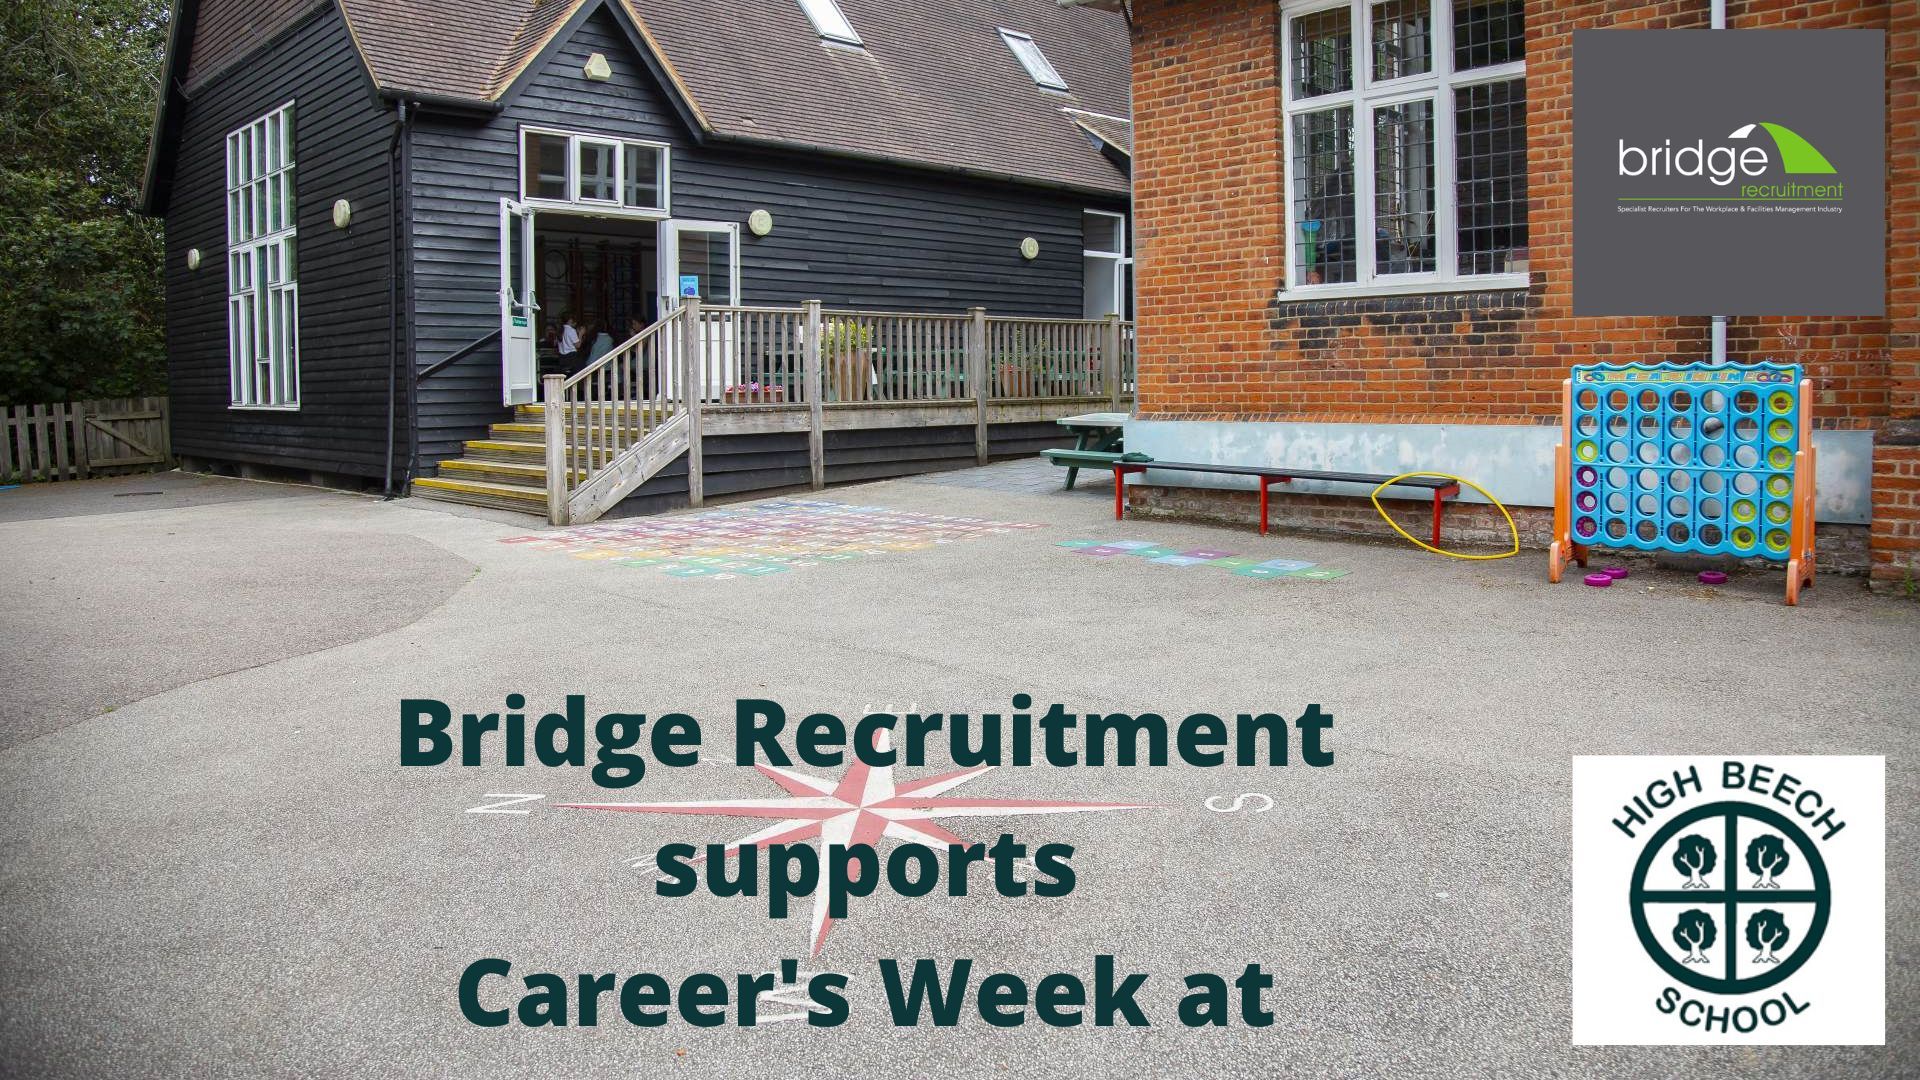 Bridge Recruitment X High Beech School